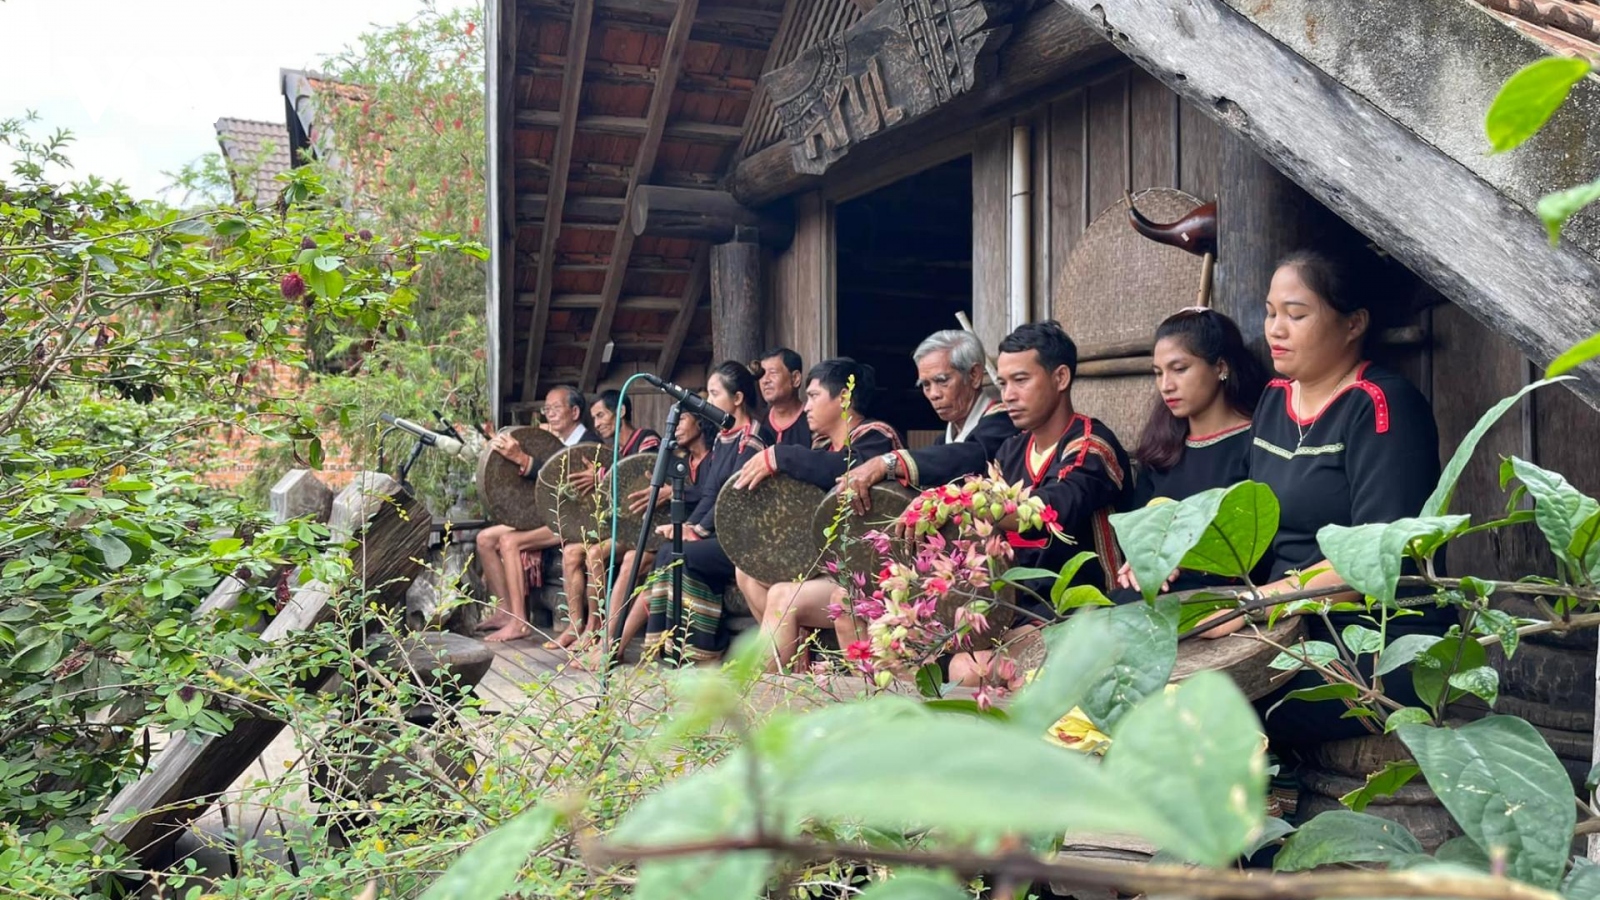 Du lịch sinh thái cộng đồng ở Đắk Lắk thu hút khách dịp nghỉ lễ